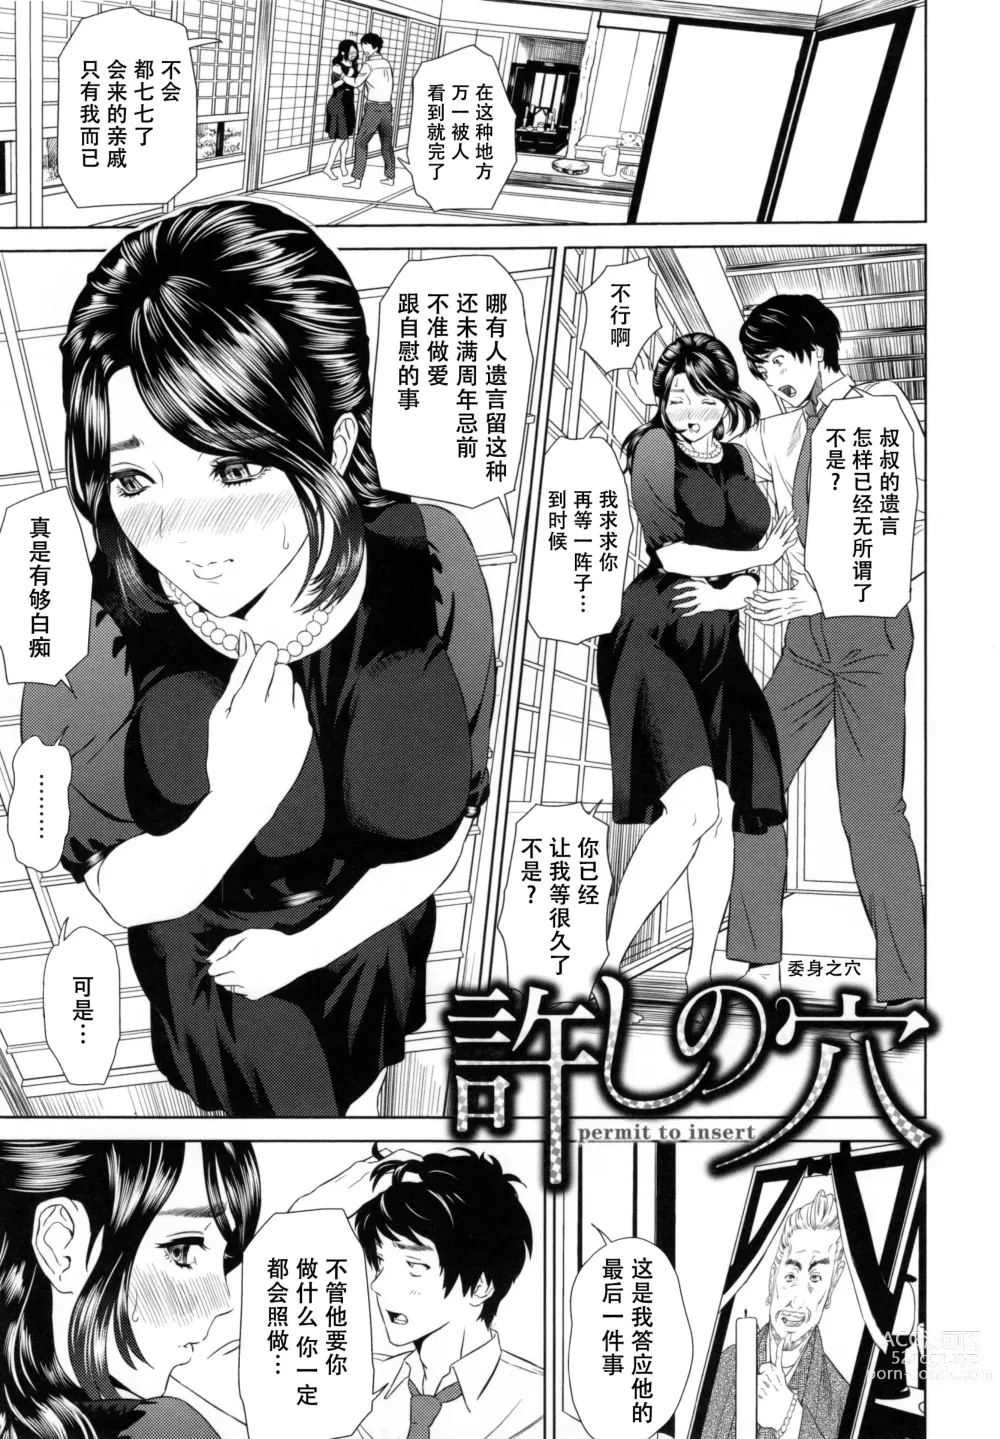 Page 8 of manga Jukuren no Wana